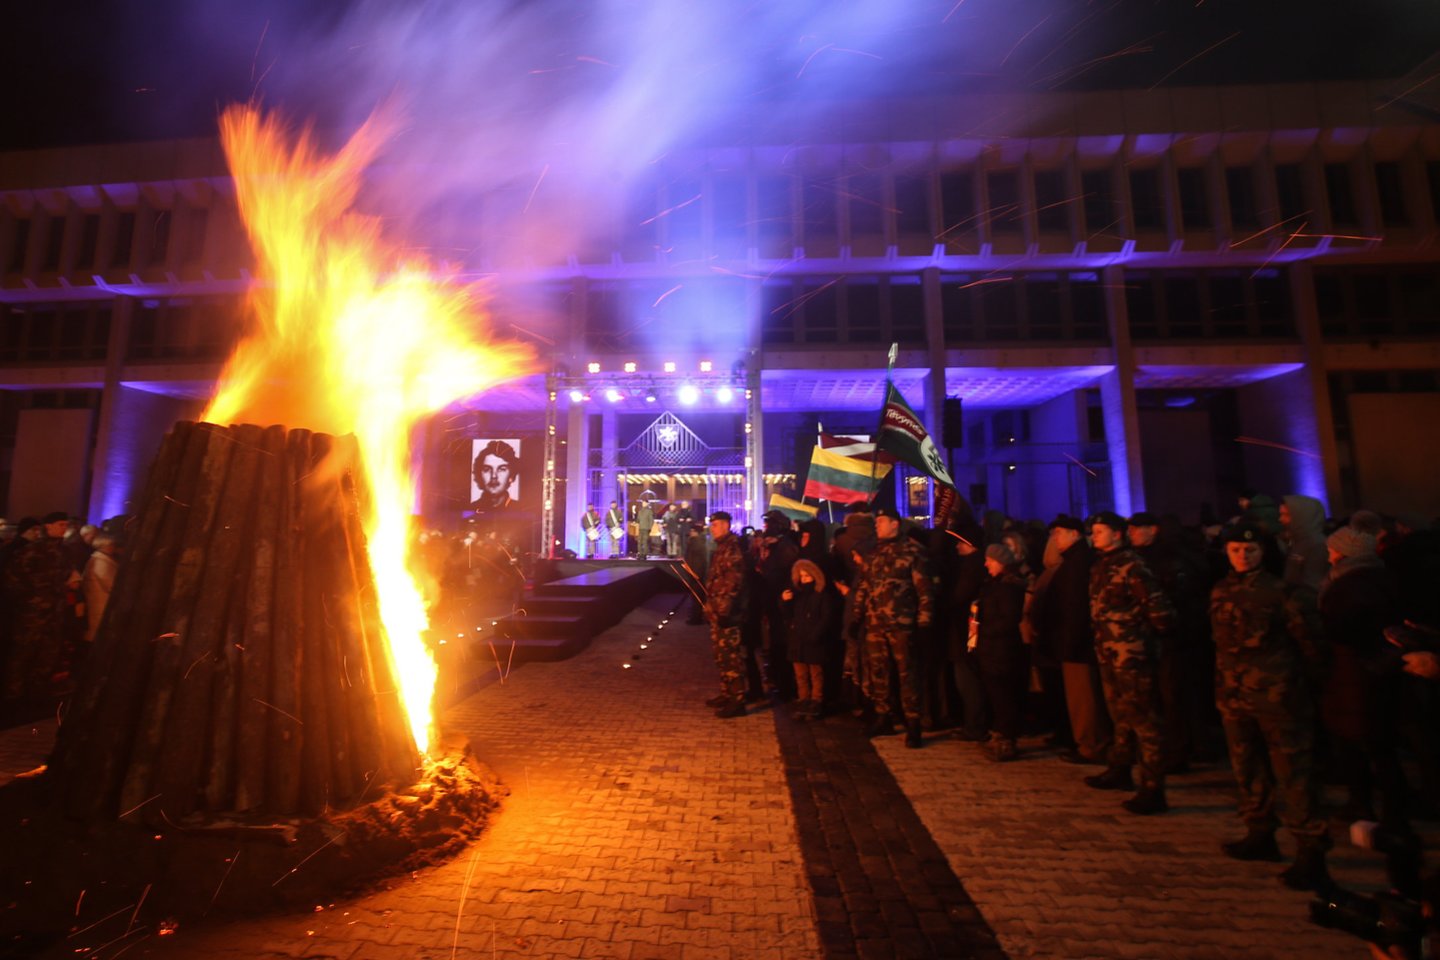 Vilniuje pagerbiant Sausio 13-ąją žuvusius laisvės gynėjus sekmadienį degami atminimo laužai.<br> R.Danisevičiaus nuotr.